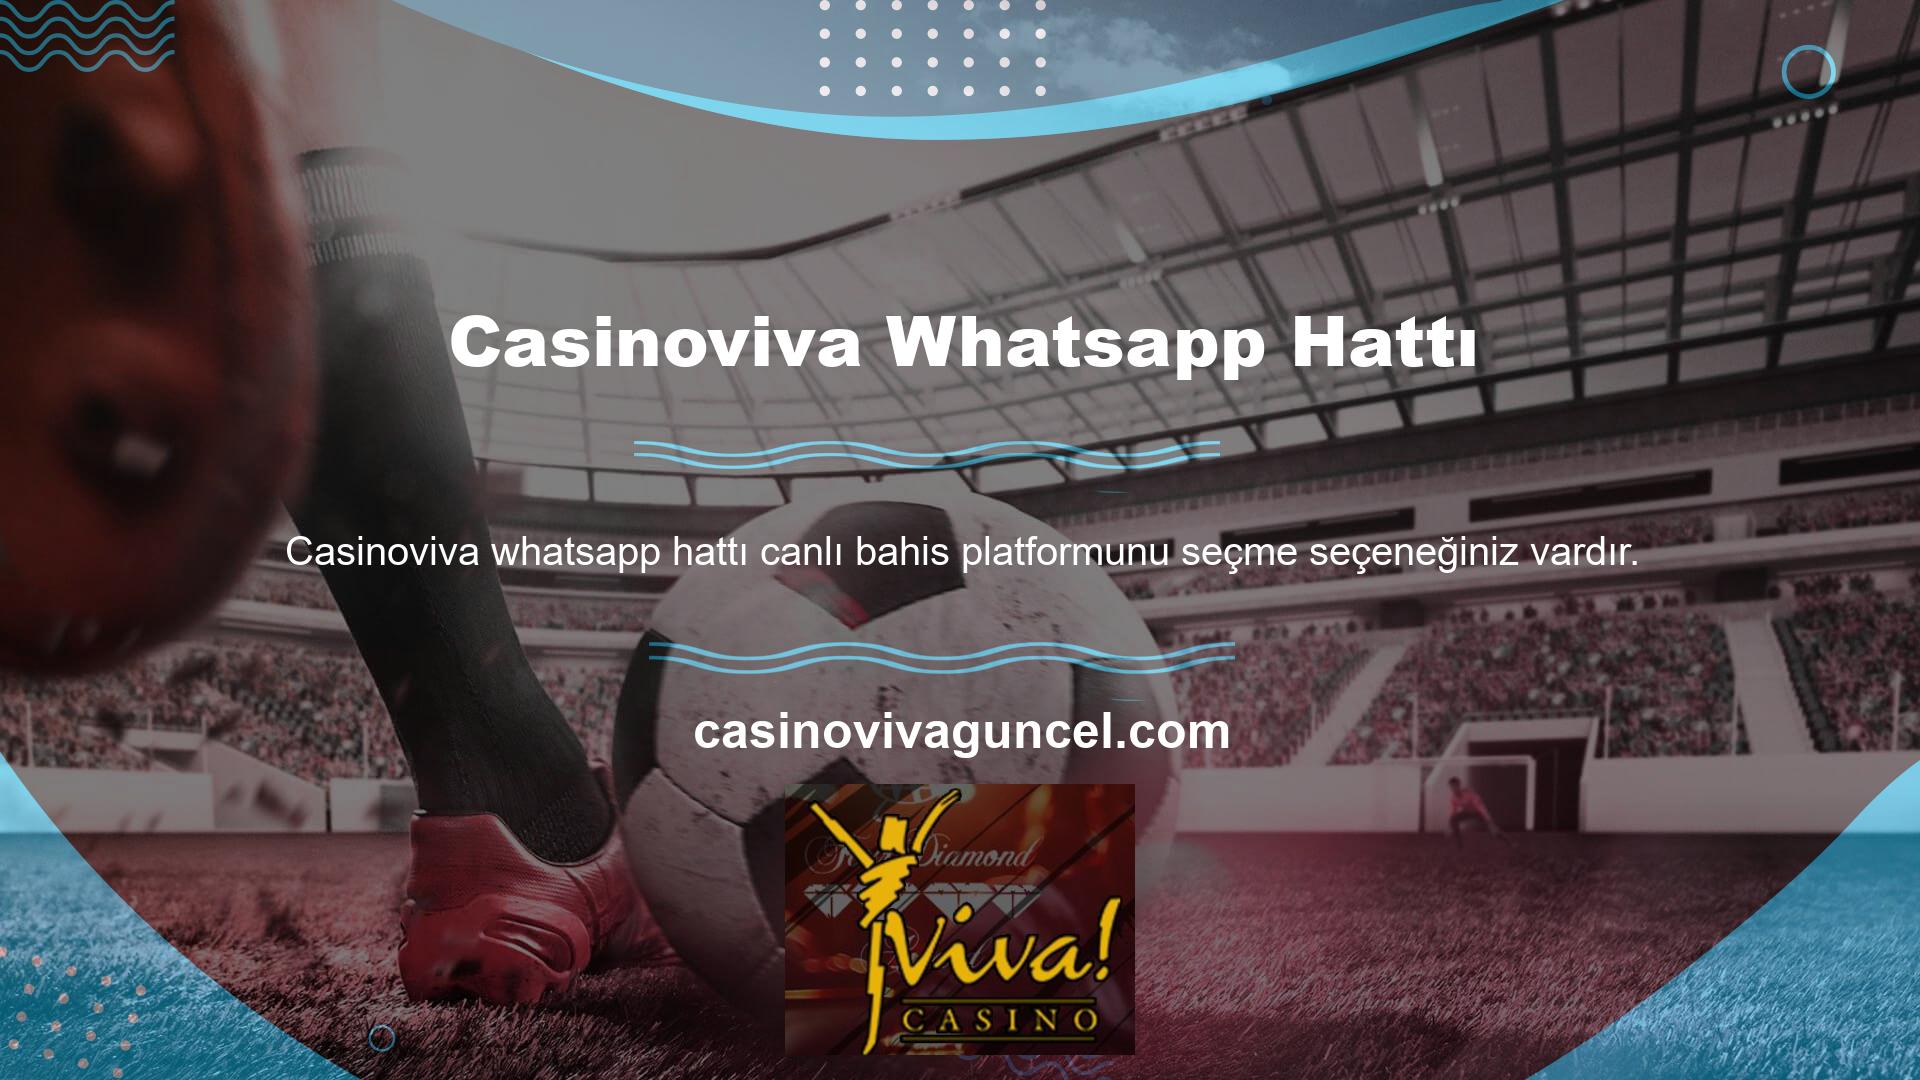 Genel olarak Casinoviva Whatsapp kayıt ve üyelik sürecini ve Web Sitesi üzerindeki hesap açma sürecini takip ederek Web Sitesi üzerindeki hizmetlerden kolaylıkla yararlanabilirsiniz